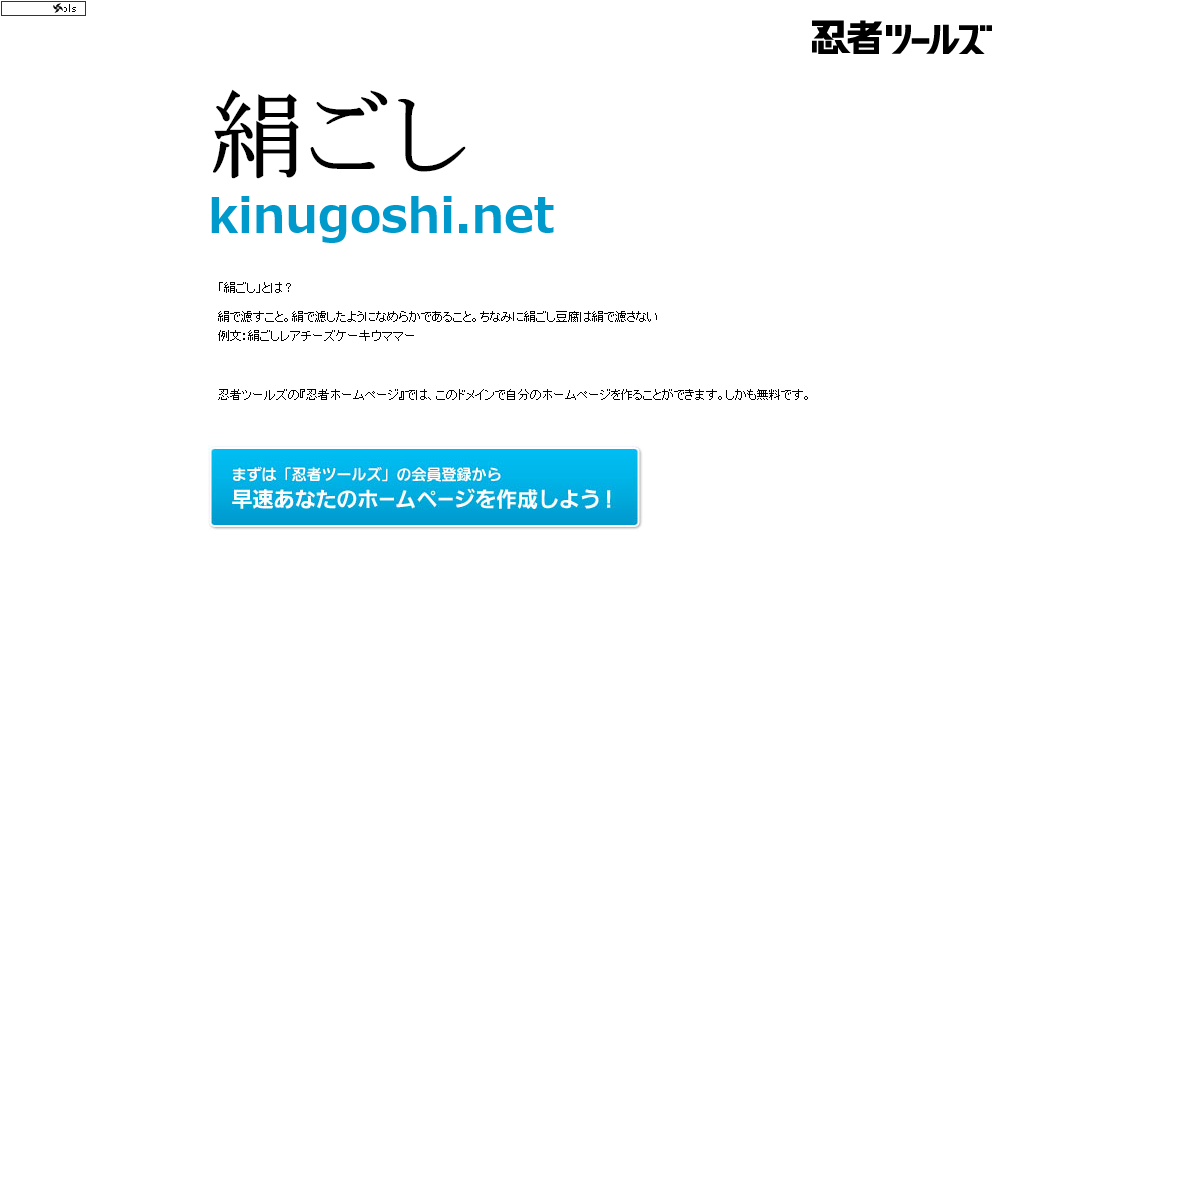 A complete backup of kinugoshi.net